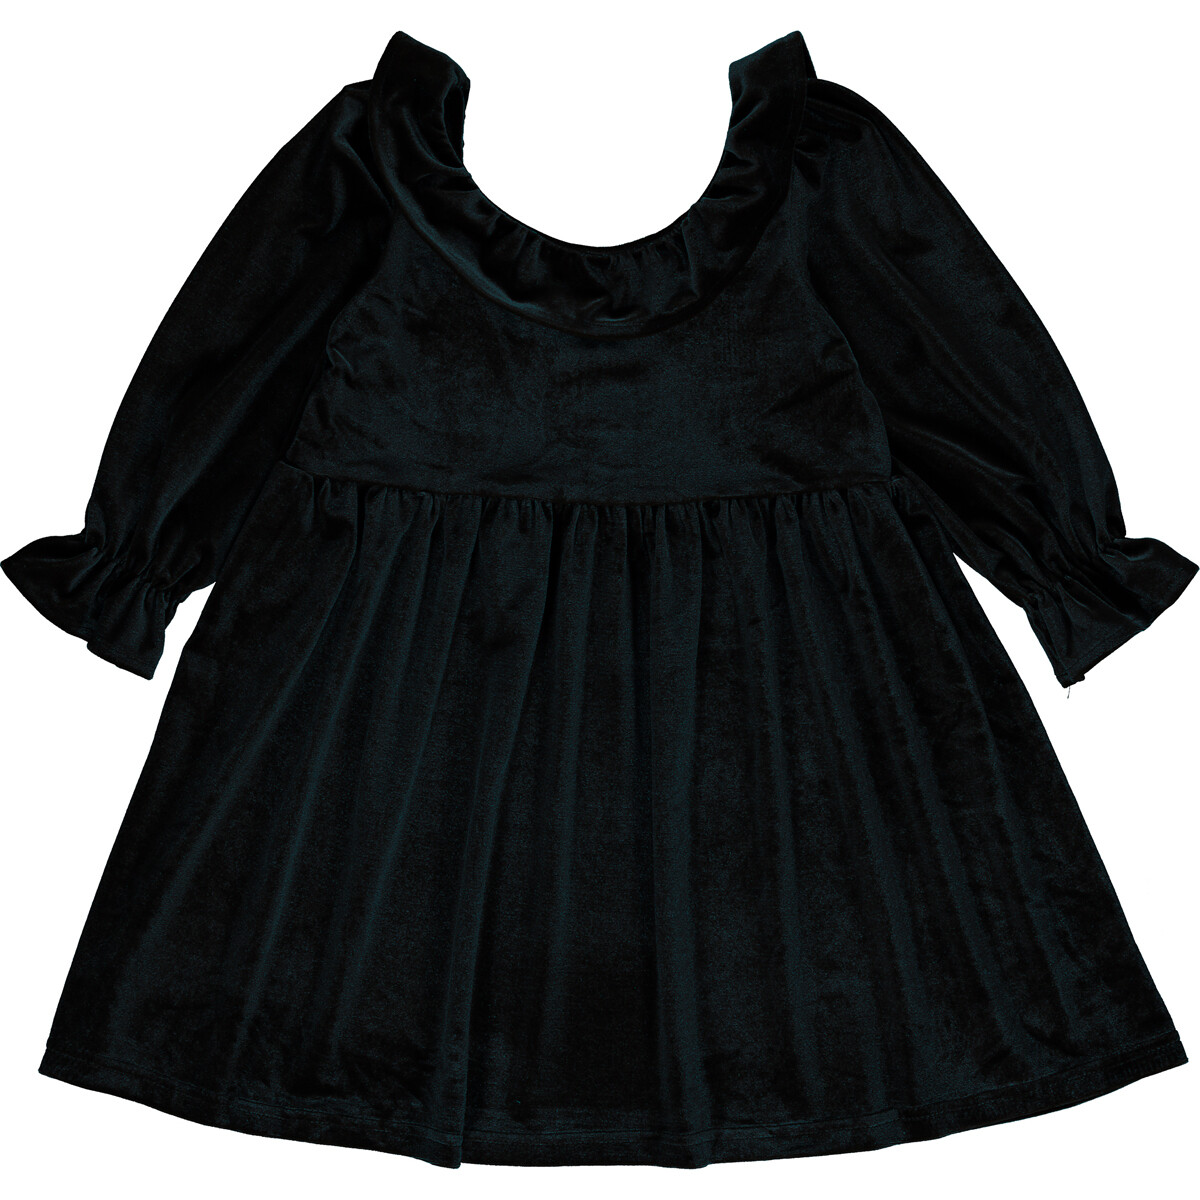 Vignette Girls Black Milly Dress 951F*